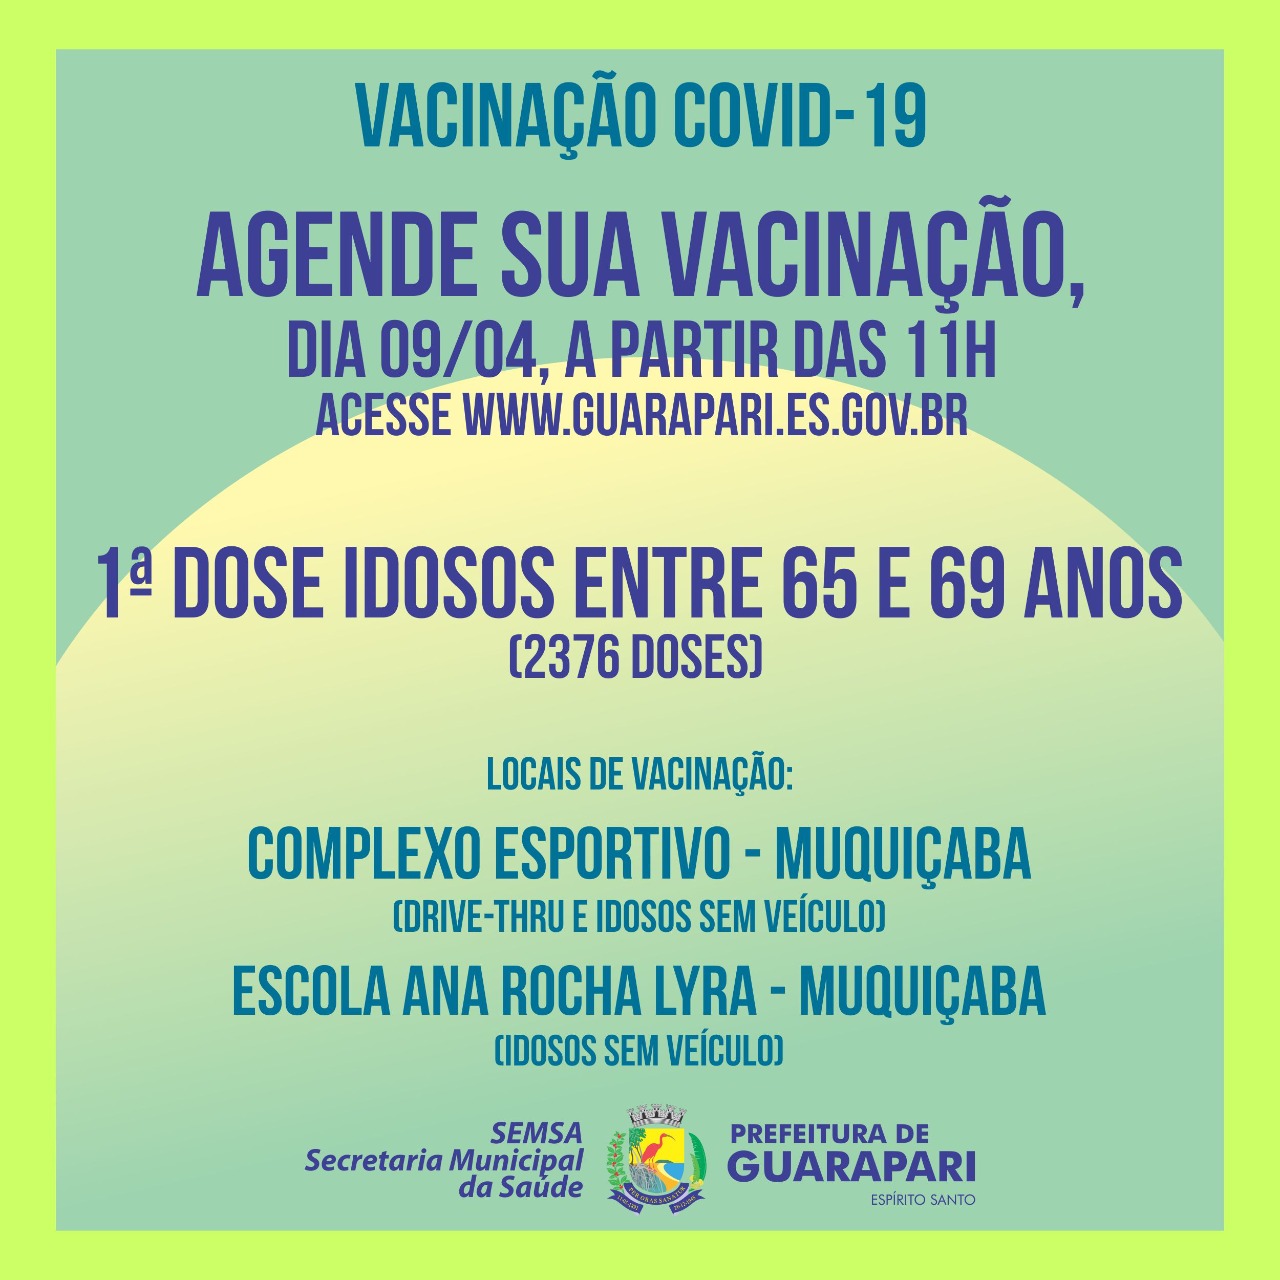 Covid-19: Prefeitura de Guarapari abre novo agendamento para vacinar idosos de 65 a 69 anos